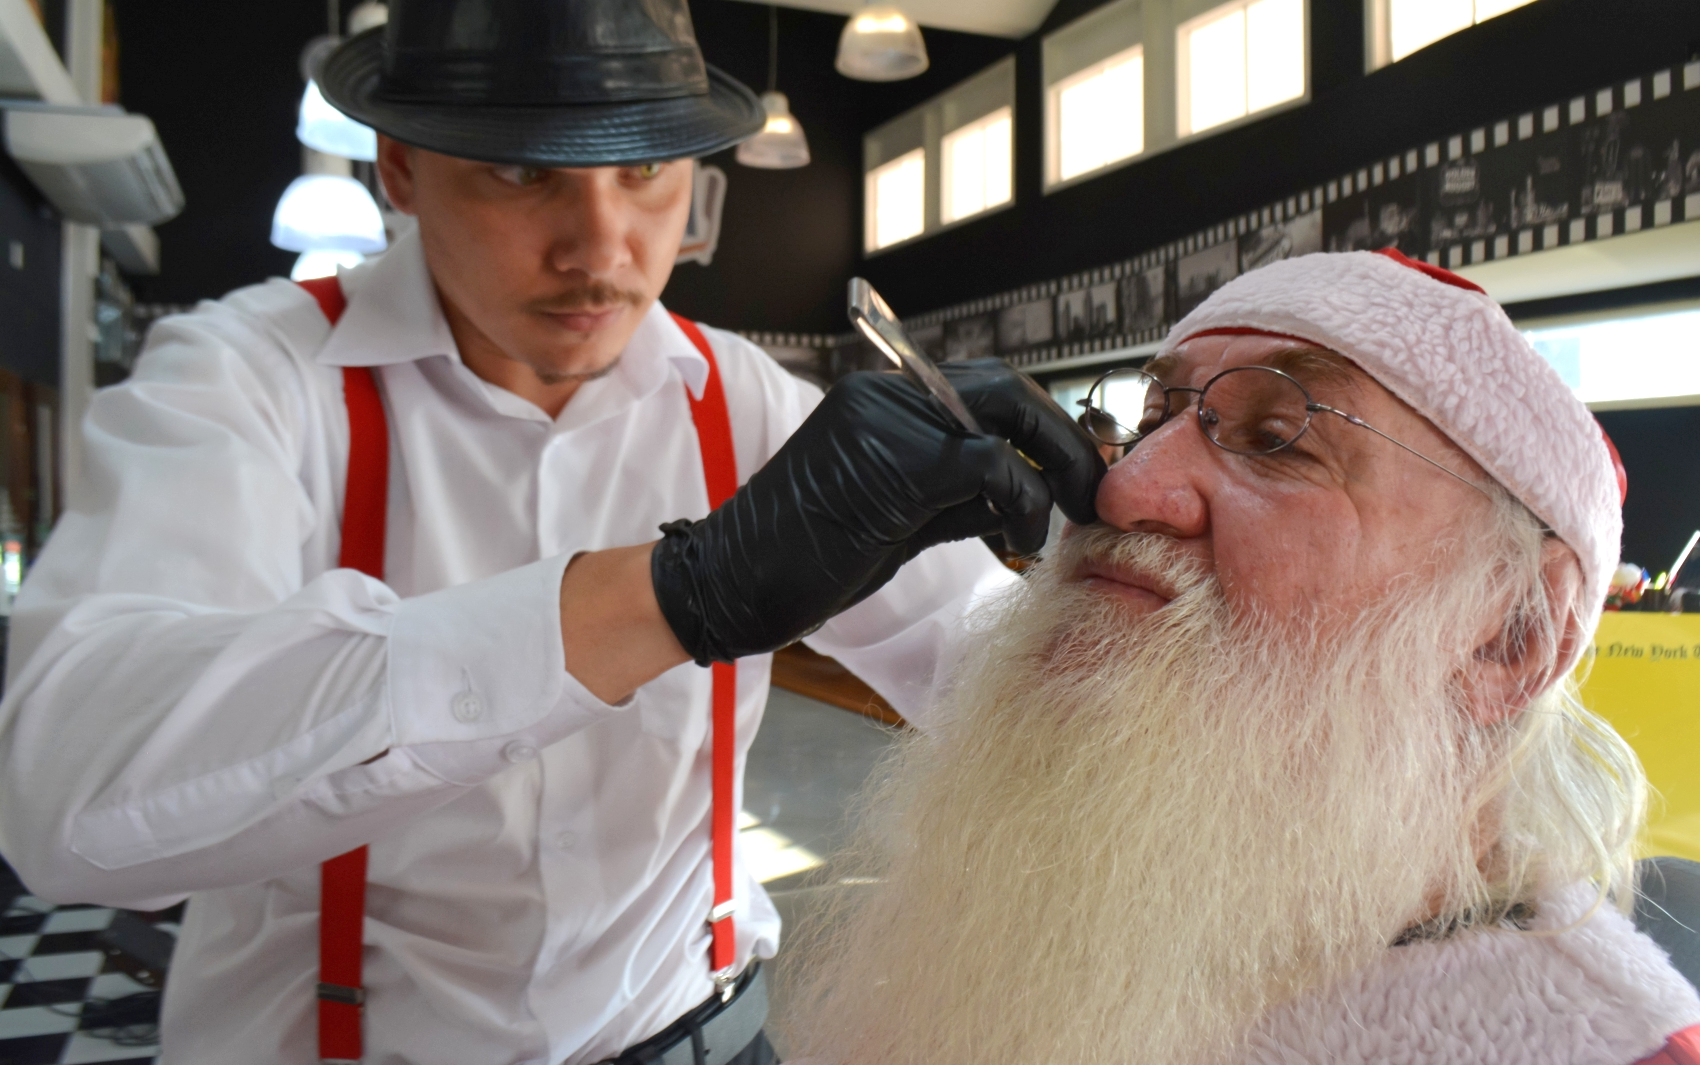 Moacir Agesse trabalha como Papai Noel há 27 anos, na região de Campinas